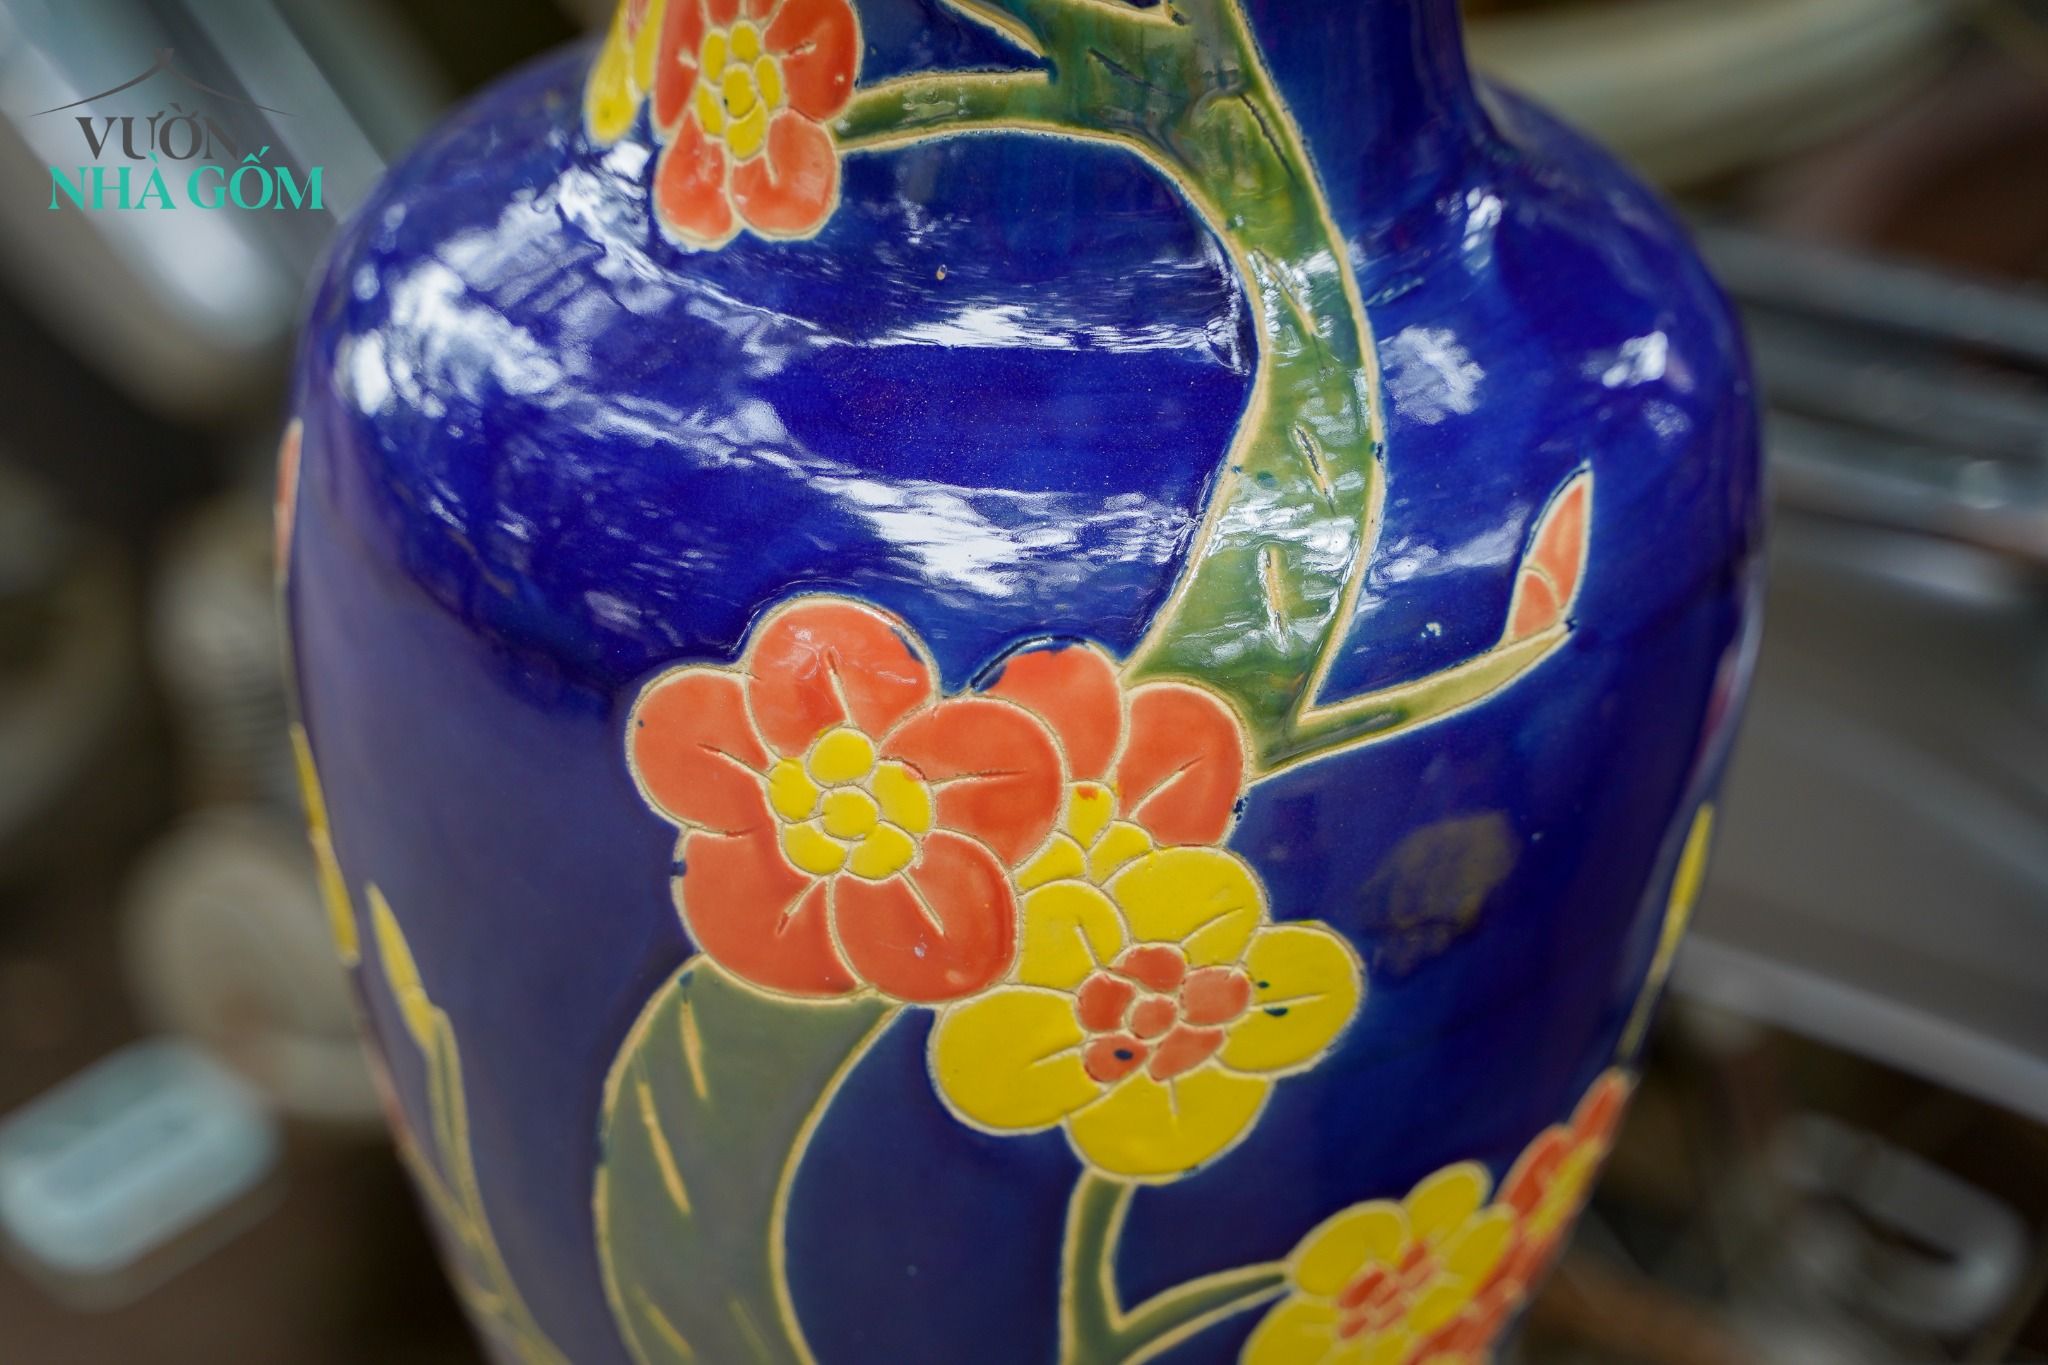  Bình khắc thủ công hoạ tiết hoa mai và hoa lan, 2 màu, gốm mỹ nghệ Nam Bộ, C53xR22 